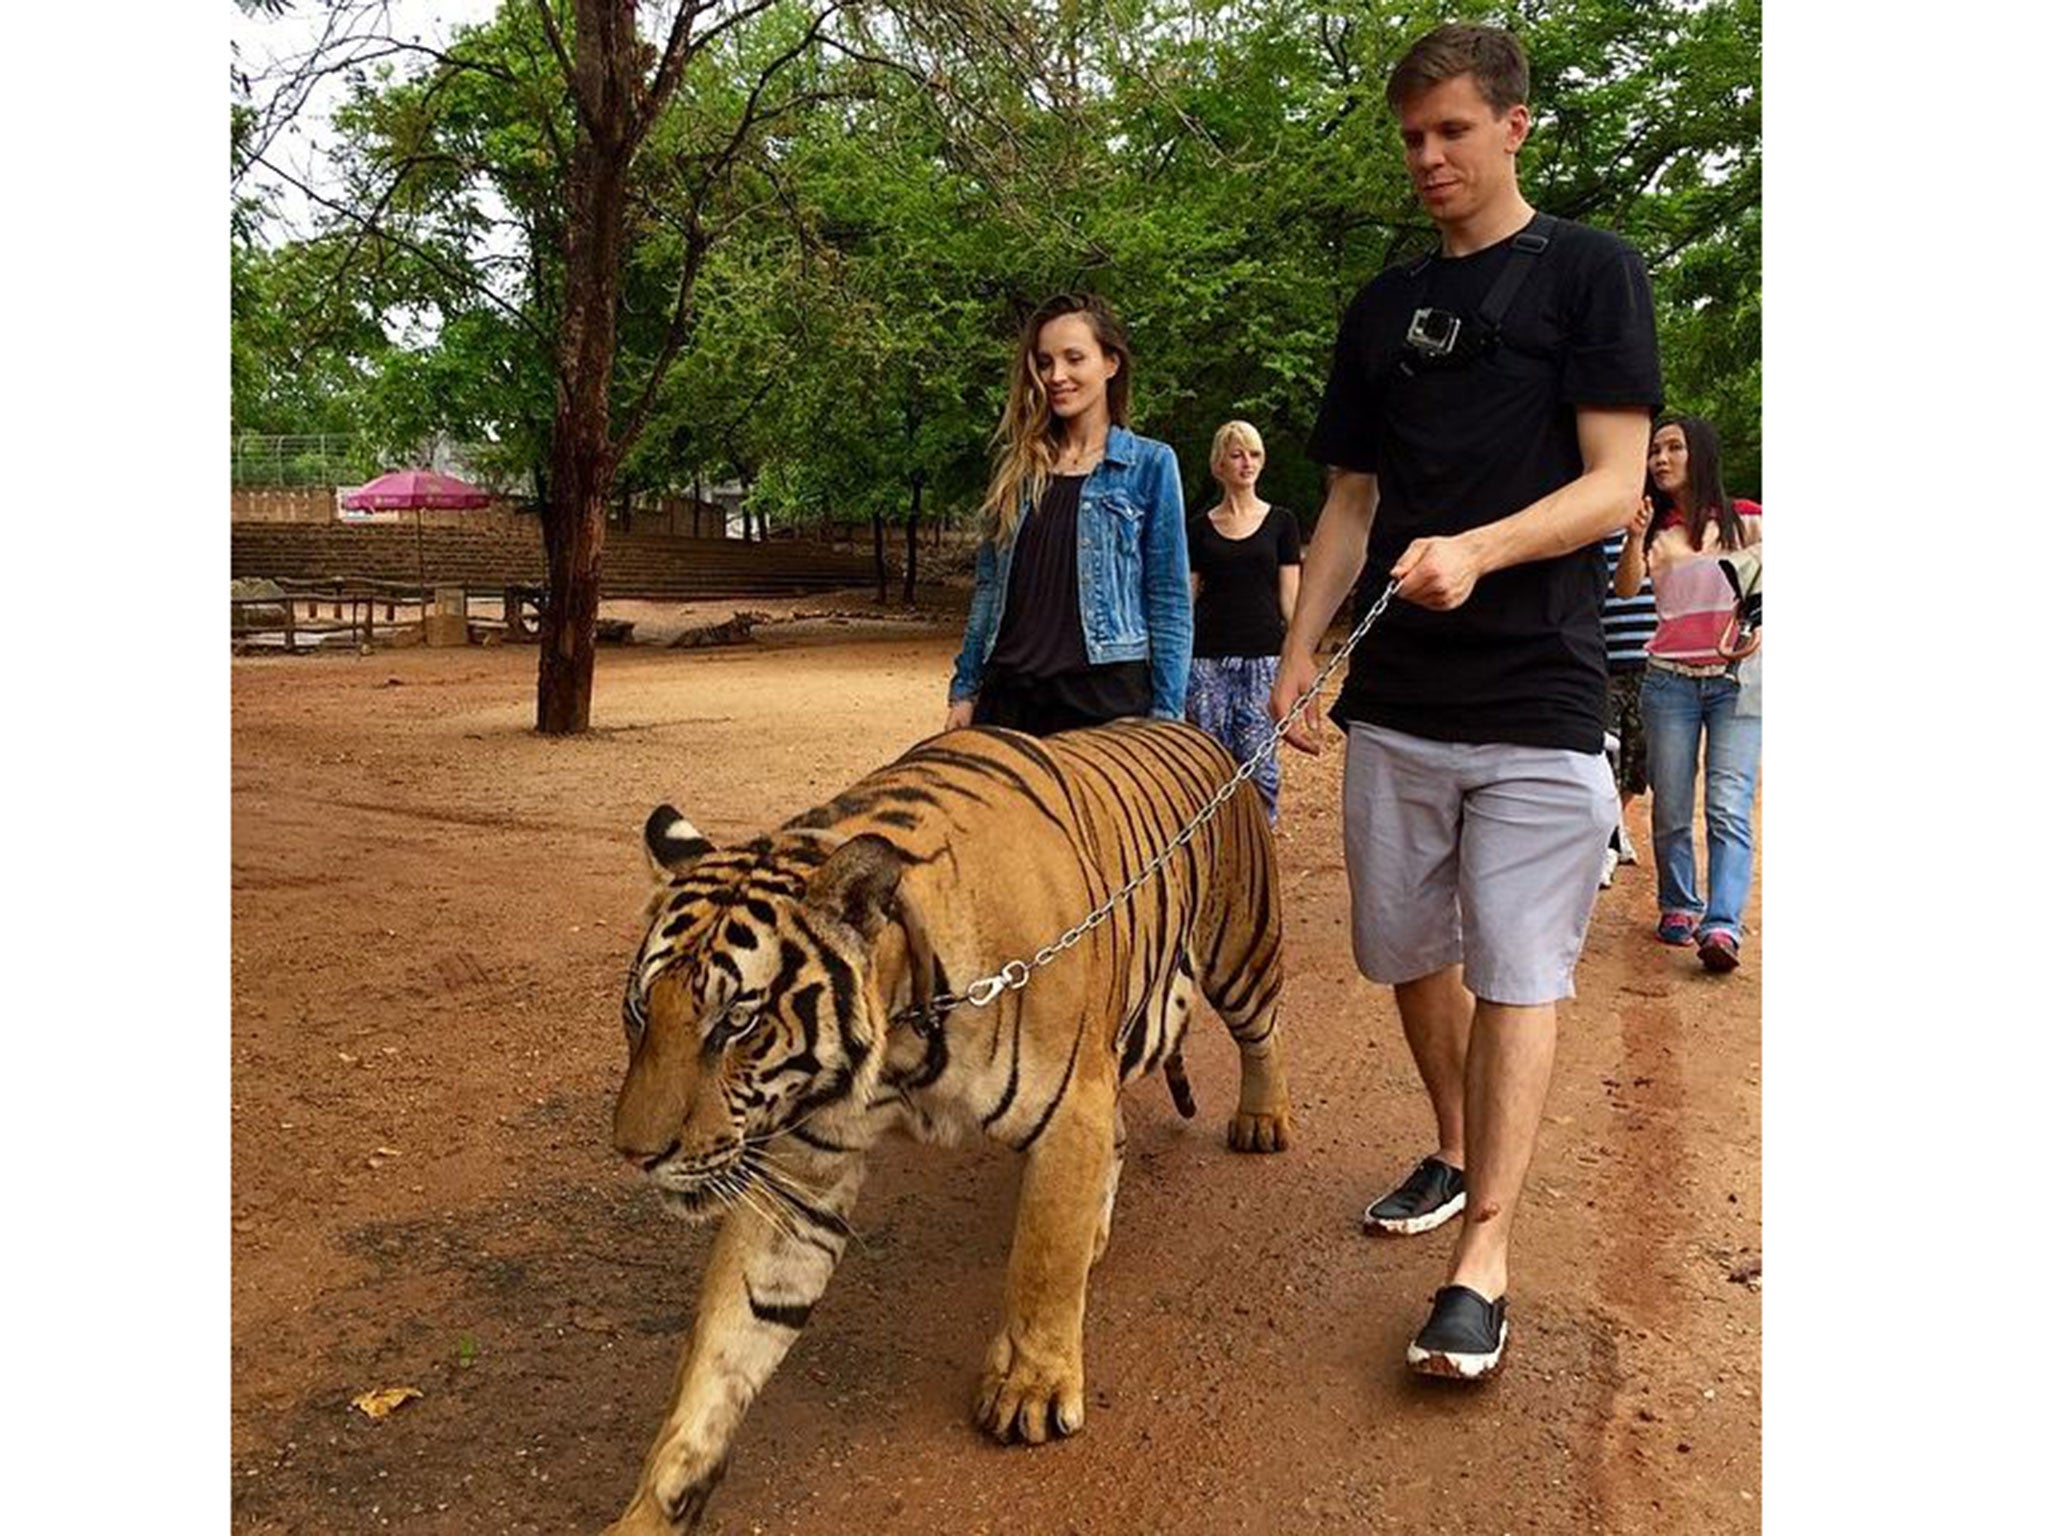 Wojciech Szczesny walks a tiger while on holiday